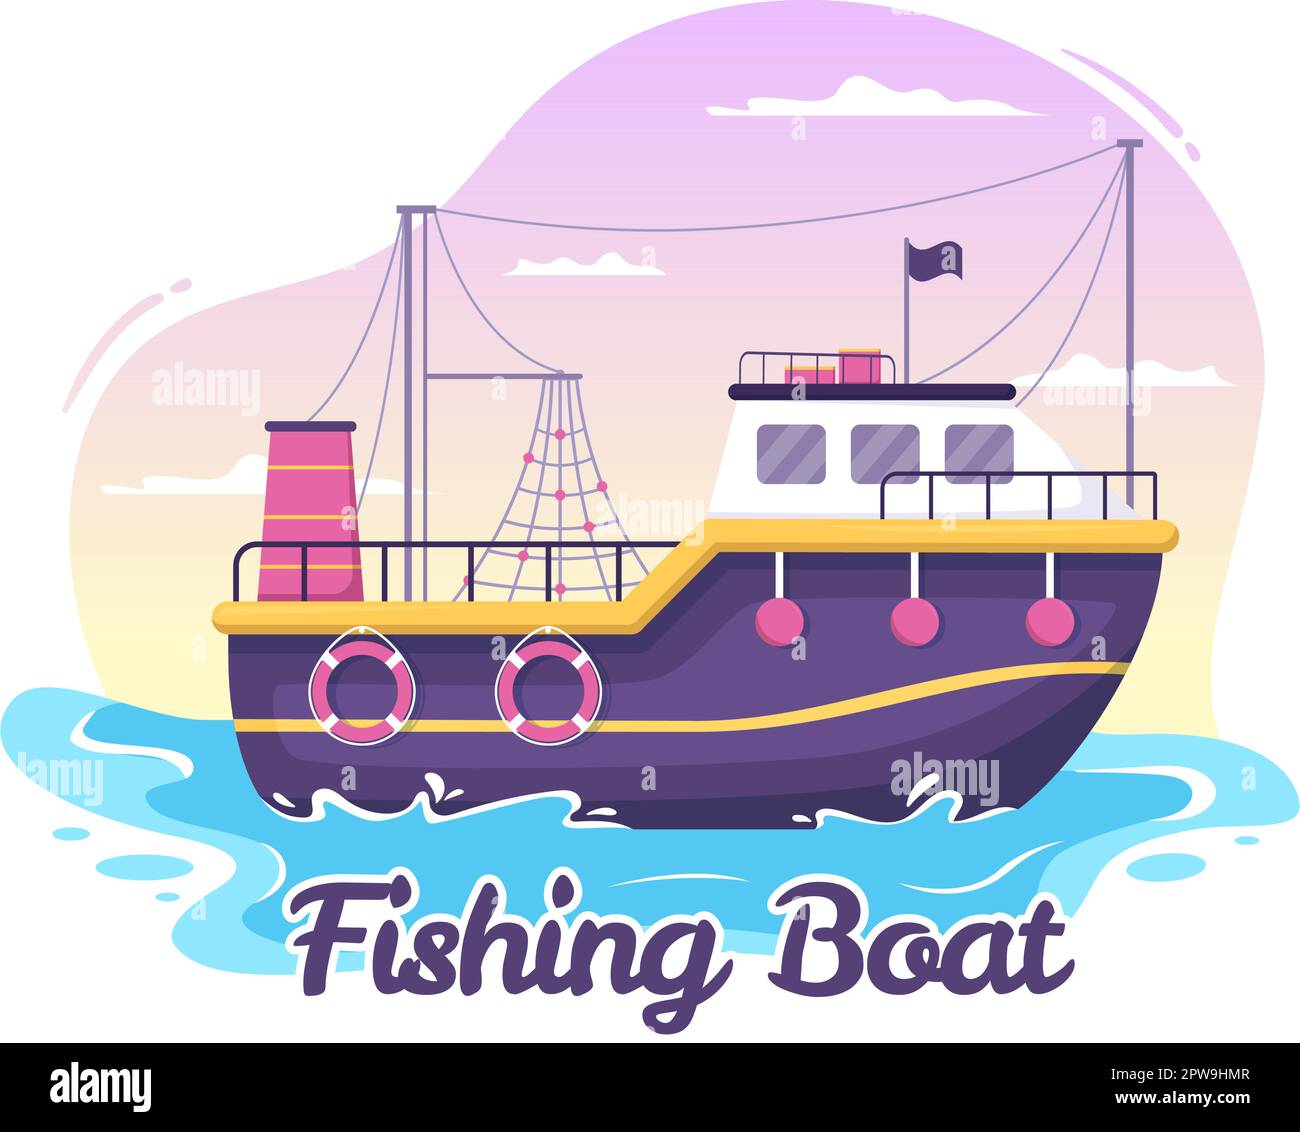 Ilustración de barco de pesca con pescadores de caza de peces usando barco para banner web o página de aterrizaje en dibujos animados planos Dibujado a mano Plantillas vectoriales Ilustración del Vector